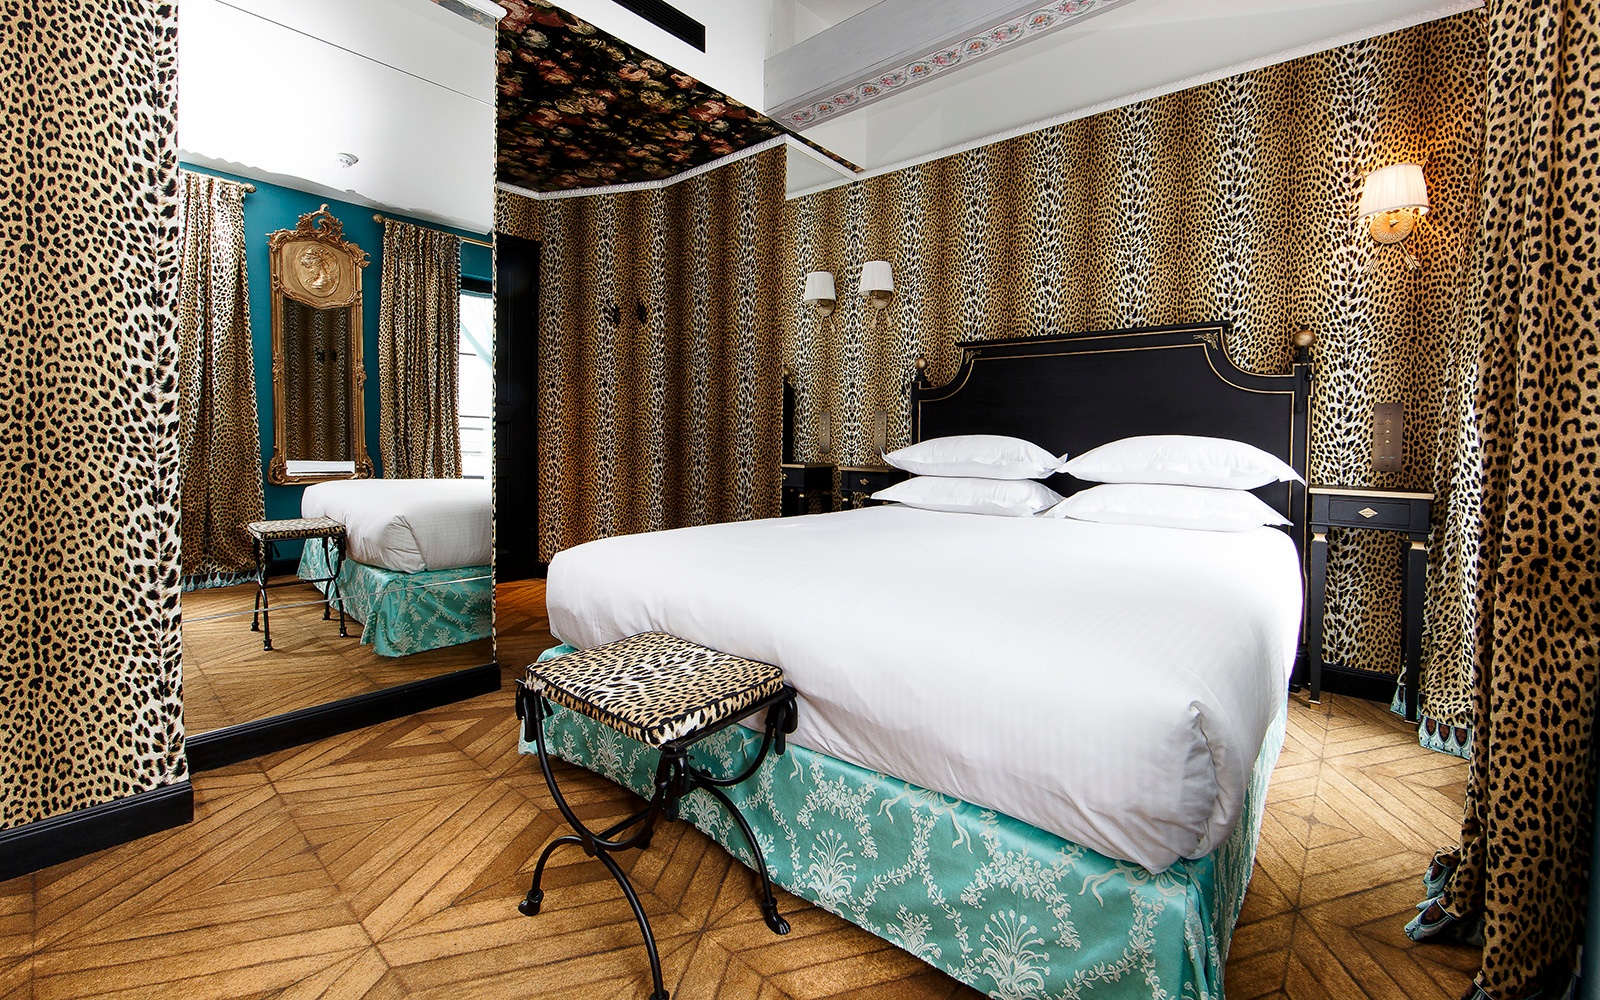 Hotel Inneneinrichtung - Hotelzimmer im Hôtel de JoBo in Paris mit Tapete im Leopardenprint